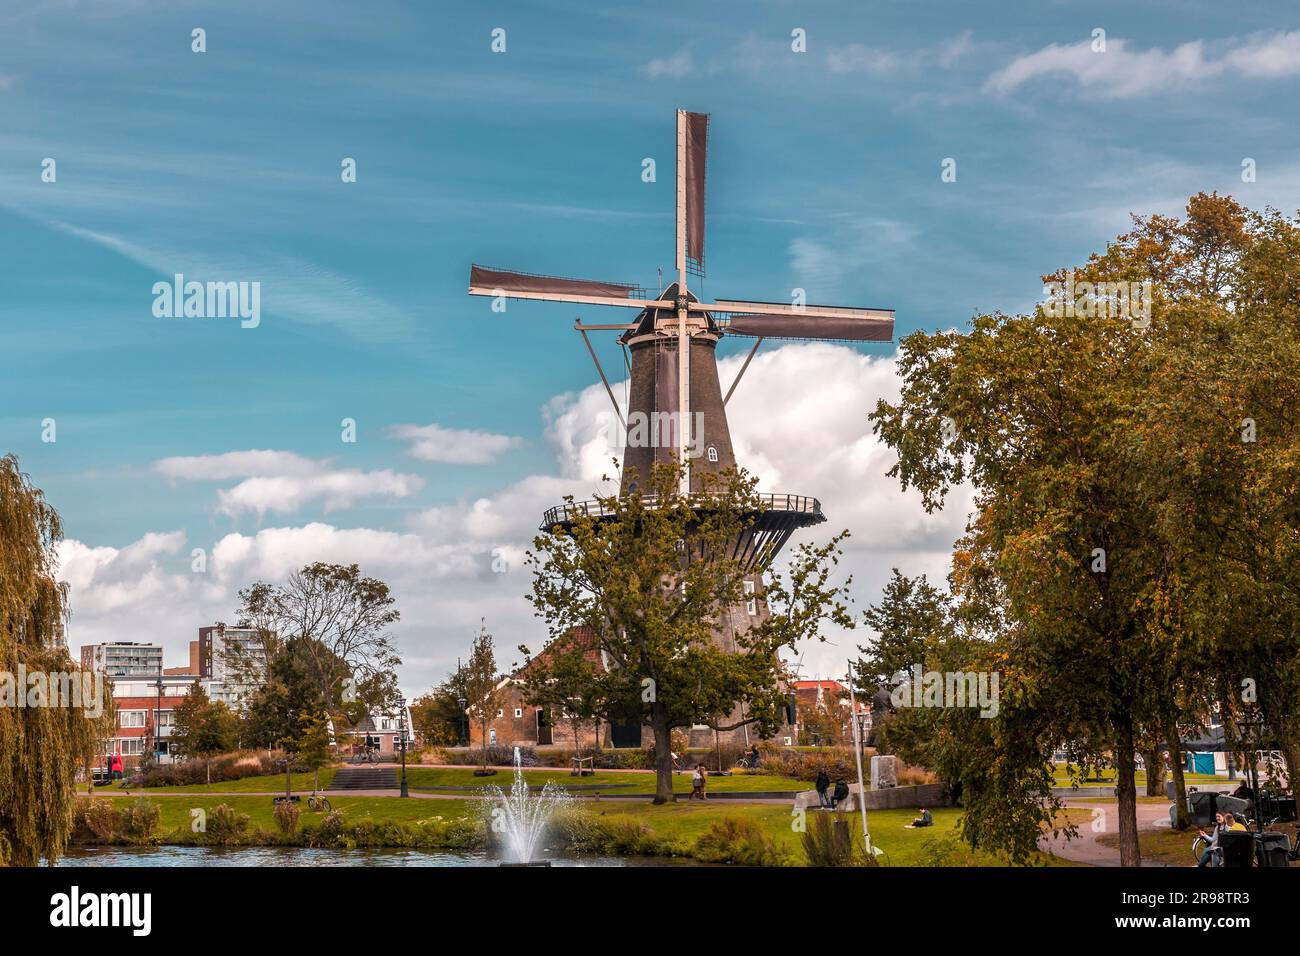 Leiden, Niederlande - 7. Oktober 2021: Molen De Valk oder De Valk Molenmuseum ist eine Turmmühle und ein Museum in Leiden, Niederlande. Stockfoto